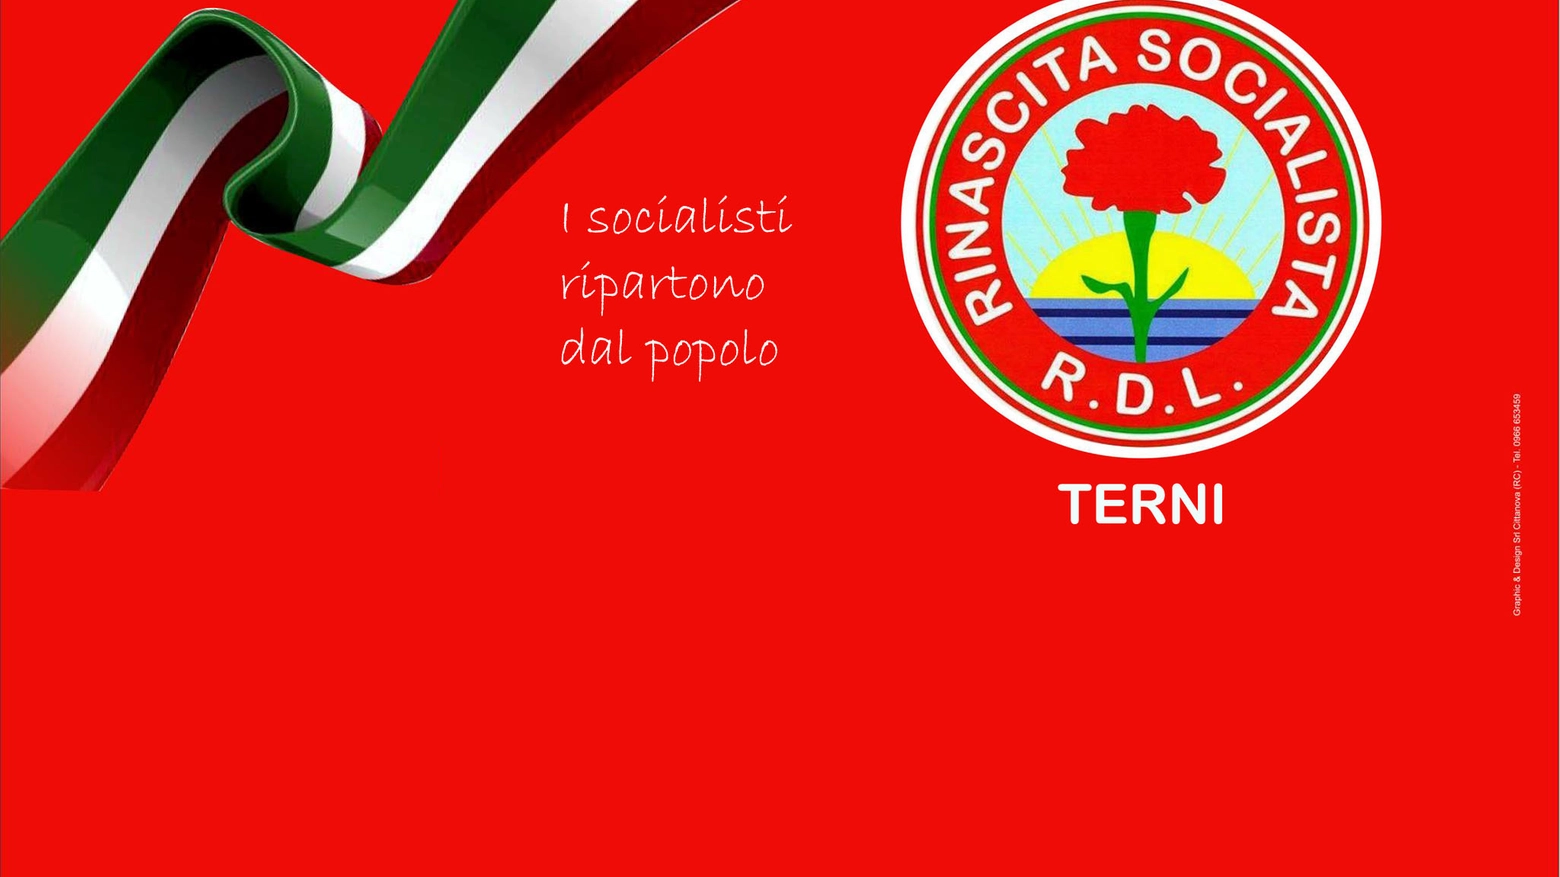 Anche in Umbria il nuovo partito politico Rinascita Socialista RDL